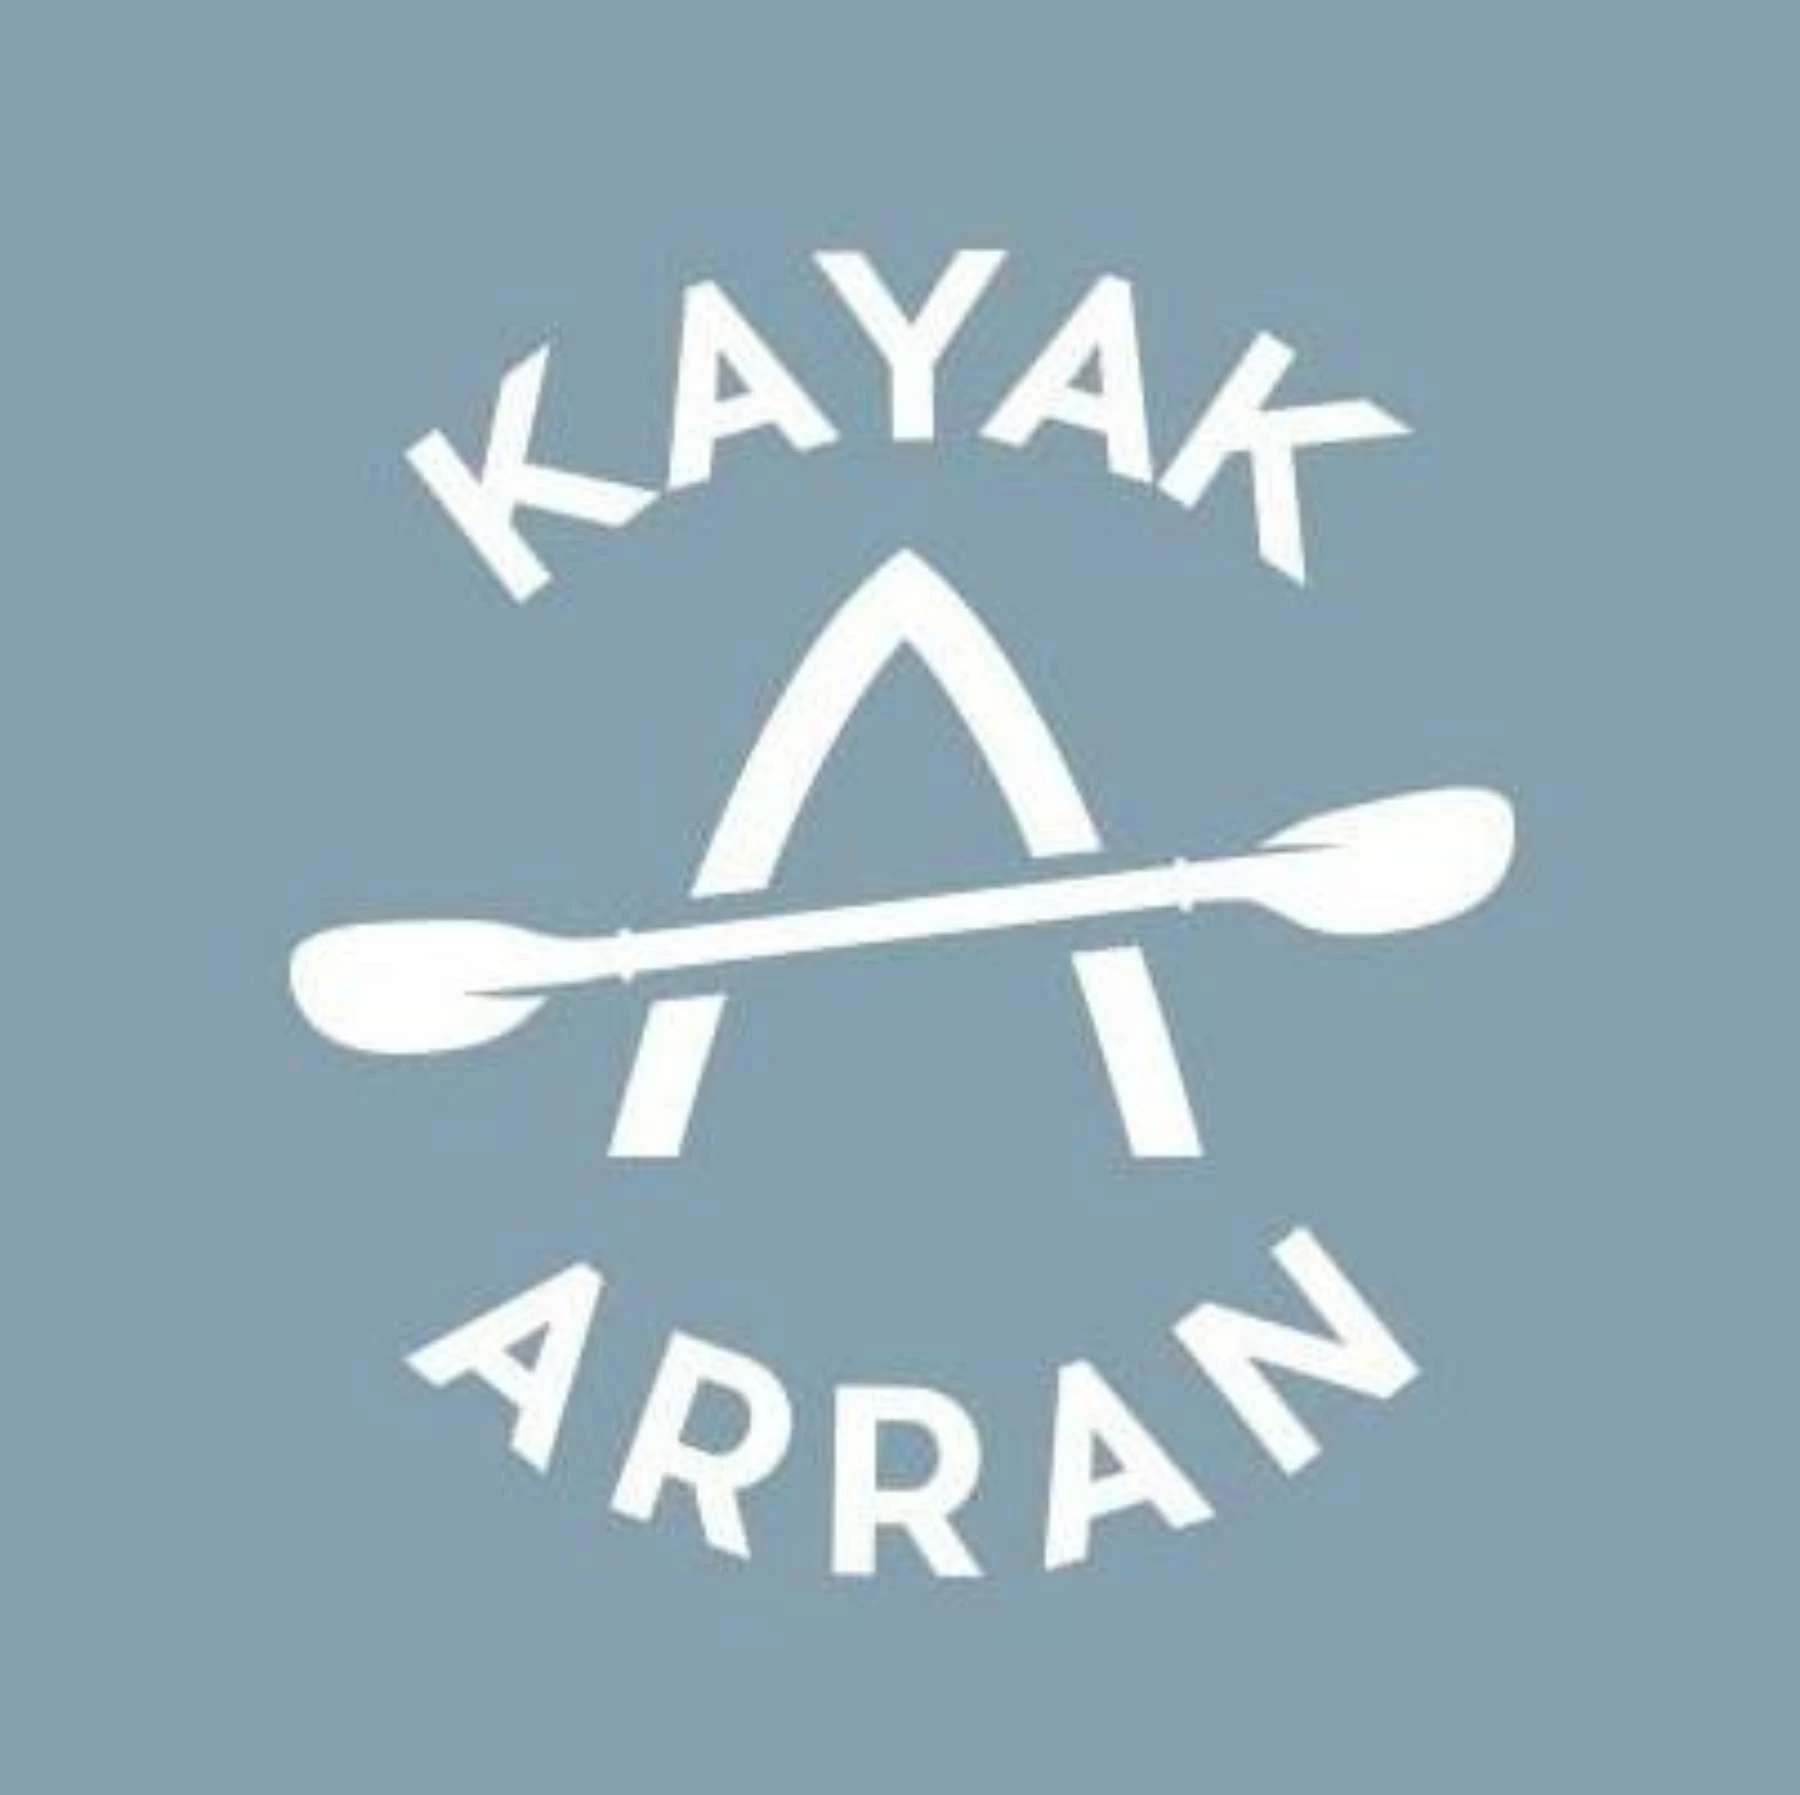 Kayak Arran (1)